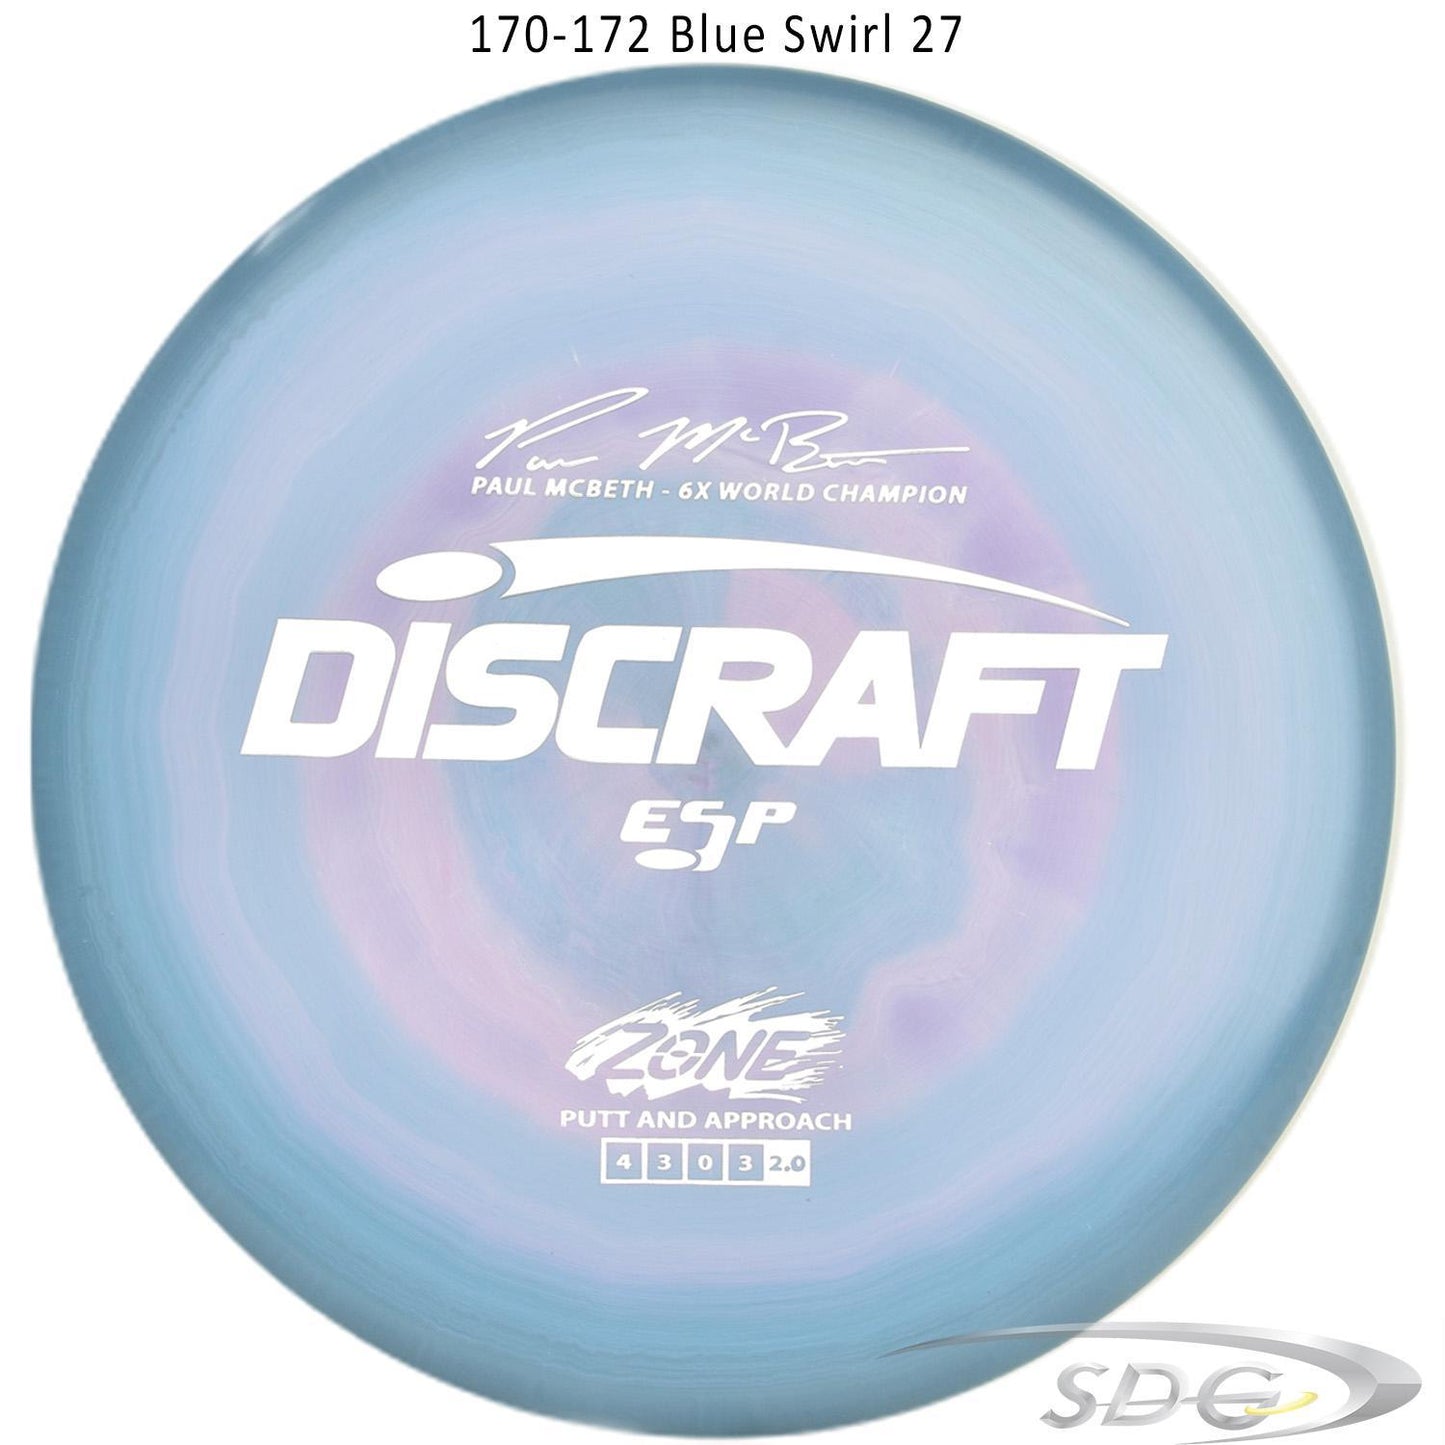 discraft-esp-zone-6x-paul-mcbeth-signature-series-disc-golf-putter 170-172 Blue Swirl 27